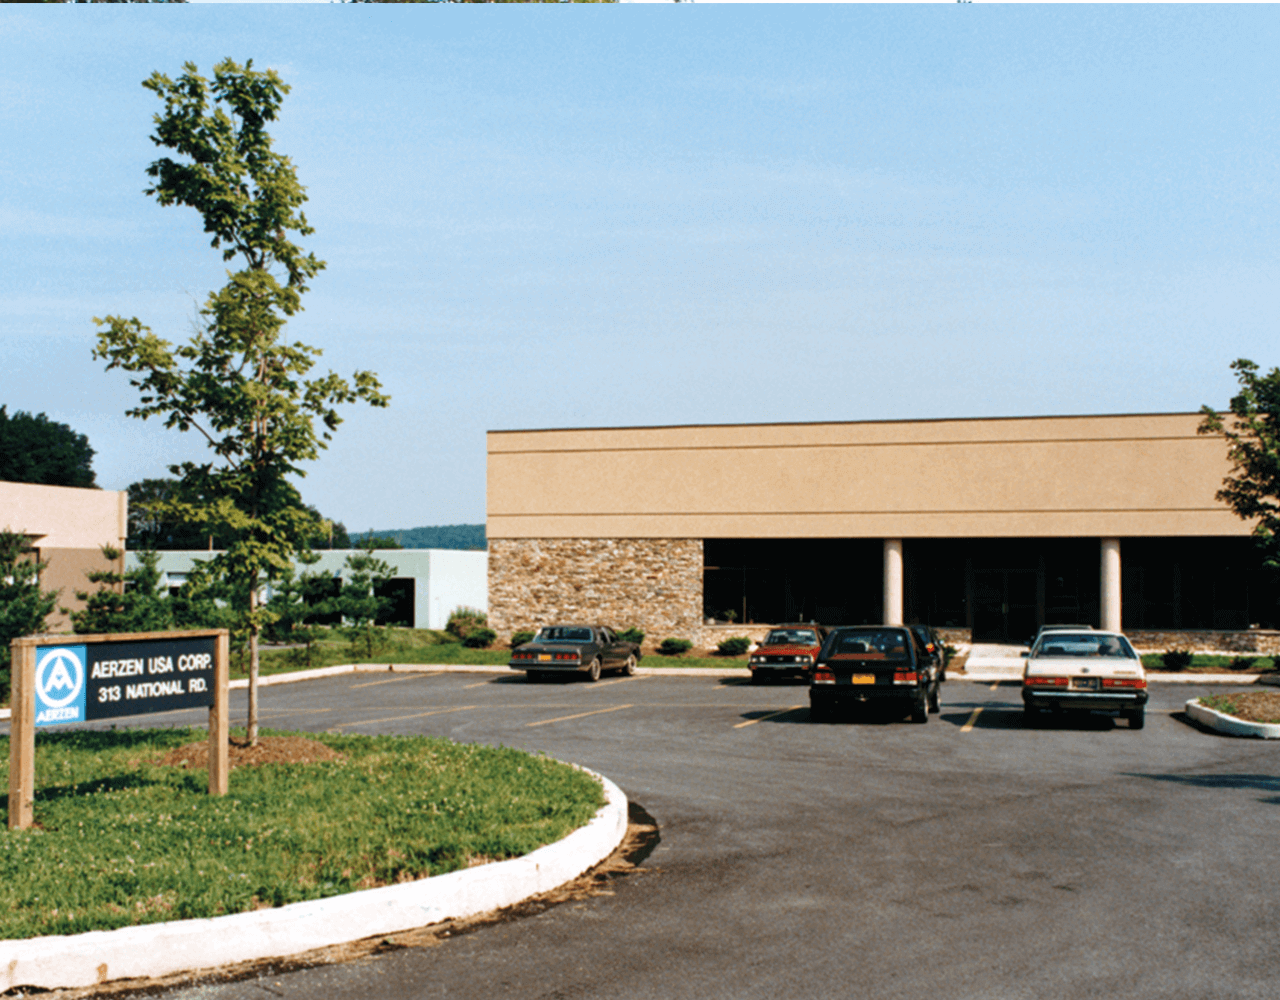 Imagem do edifício das subsidiárias Aerzen USA Corporation